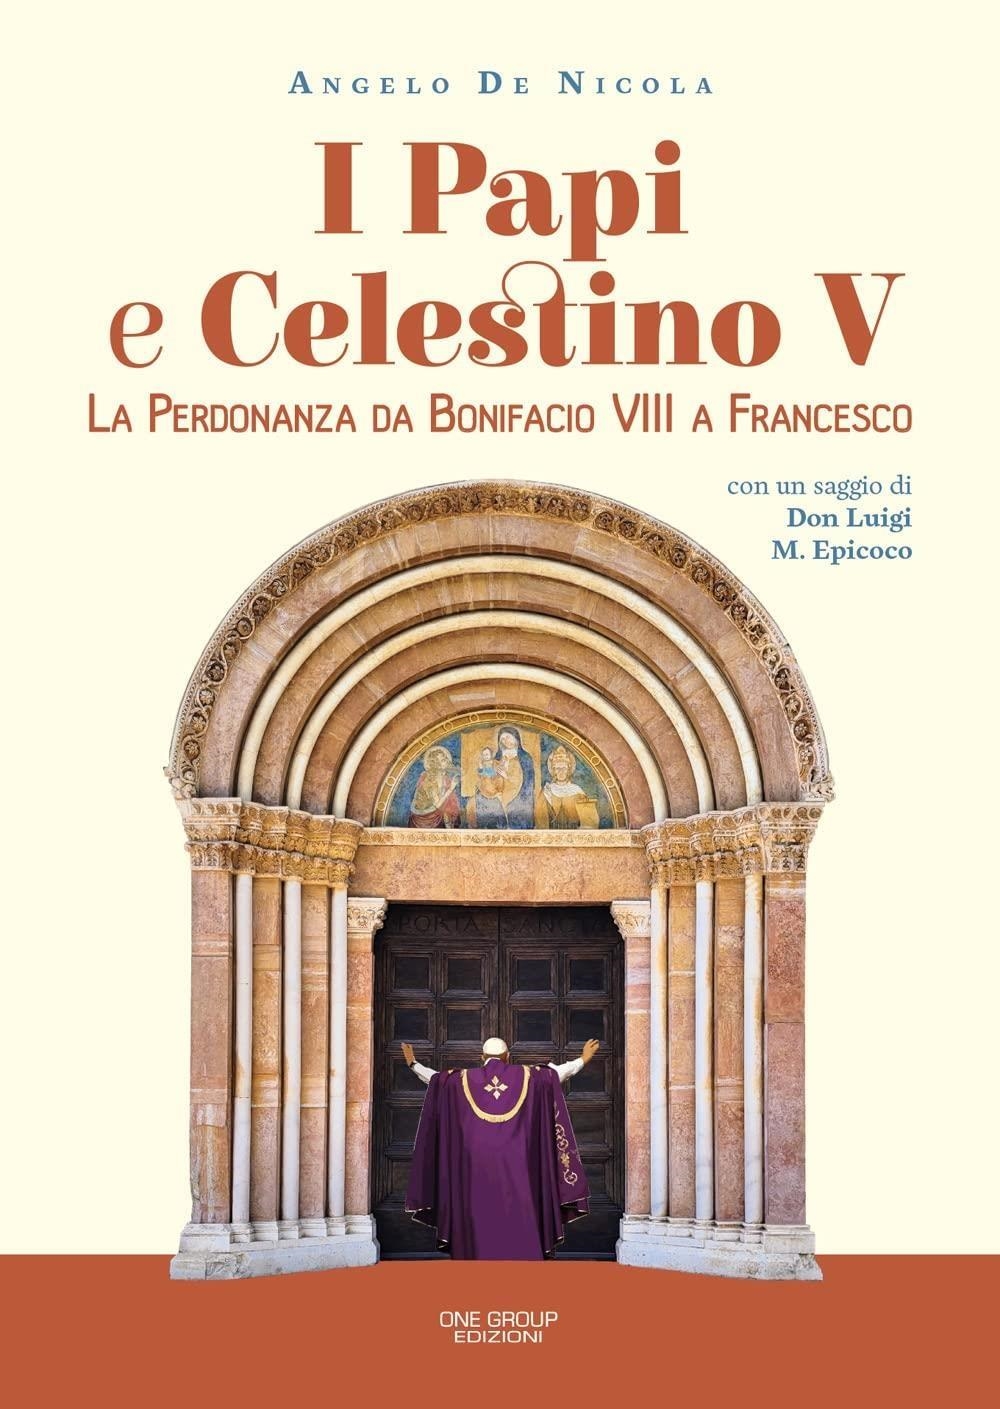 Libri De Nicola Angelo - I Papi E Celestino V. La Perdonanza Da Bonifacio VIII A Francesco NUOVO SIGILLATO SUBITO DISPONIBILE